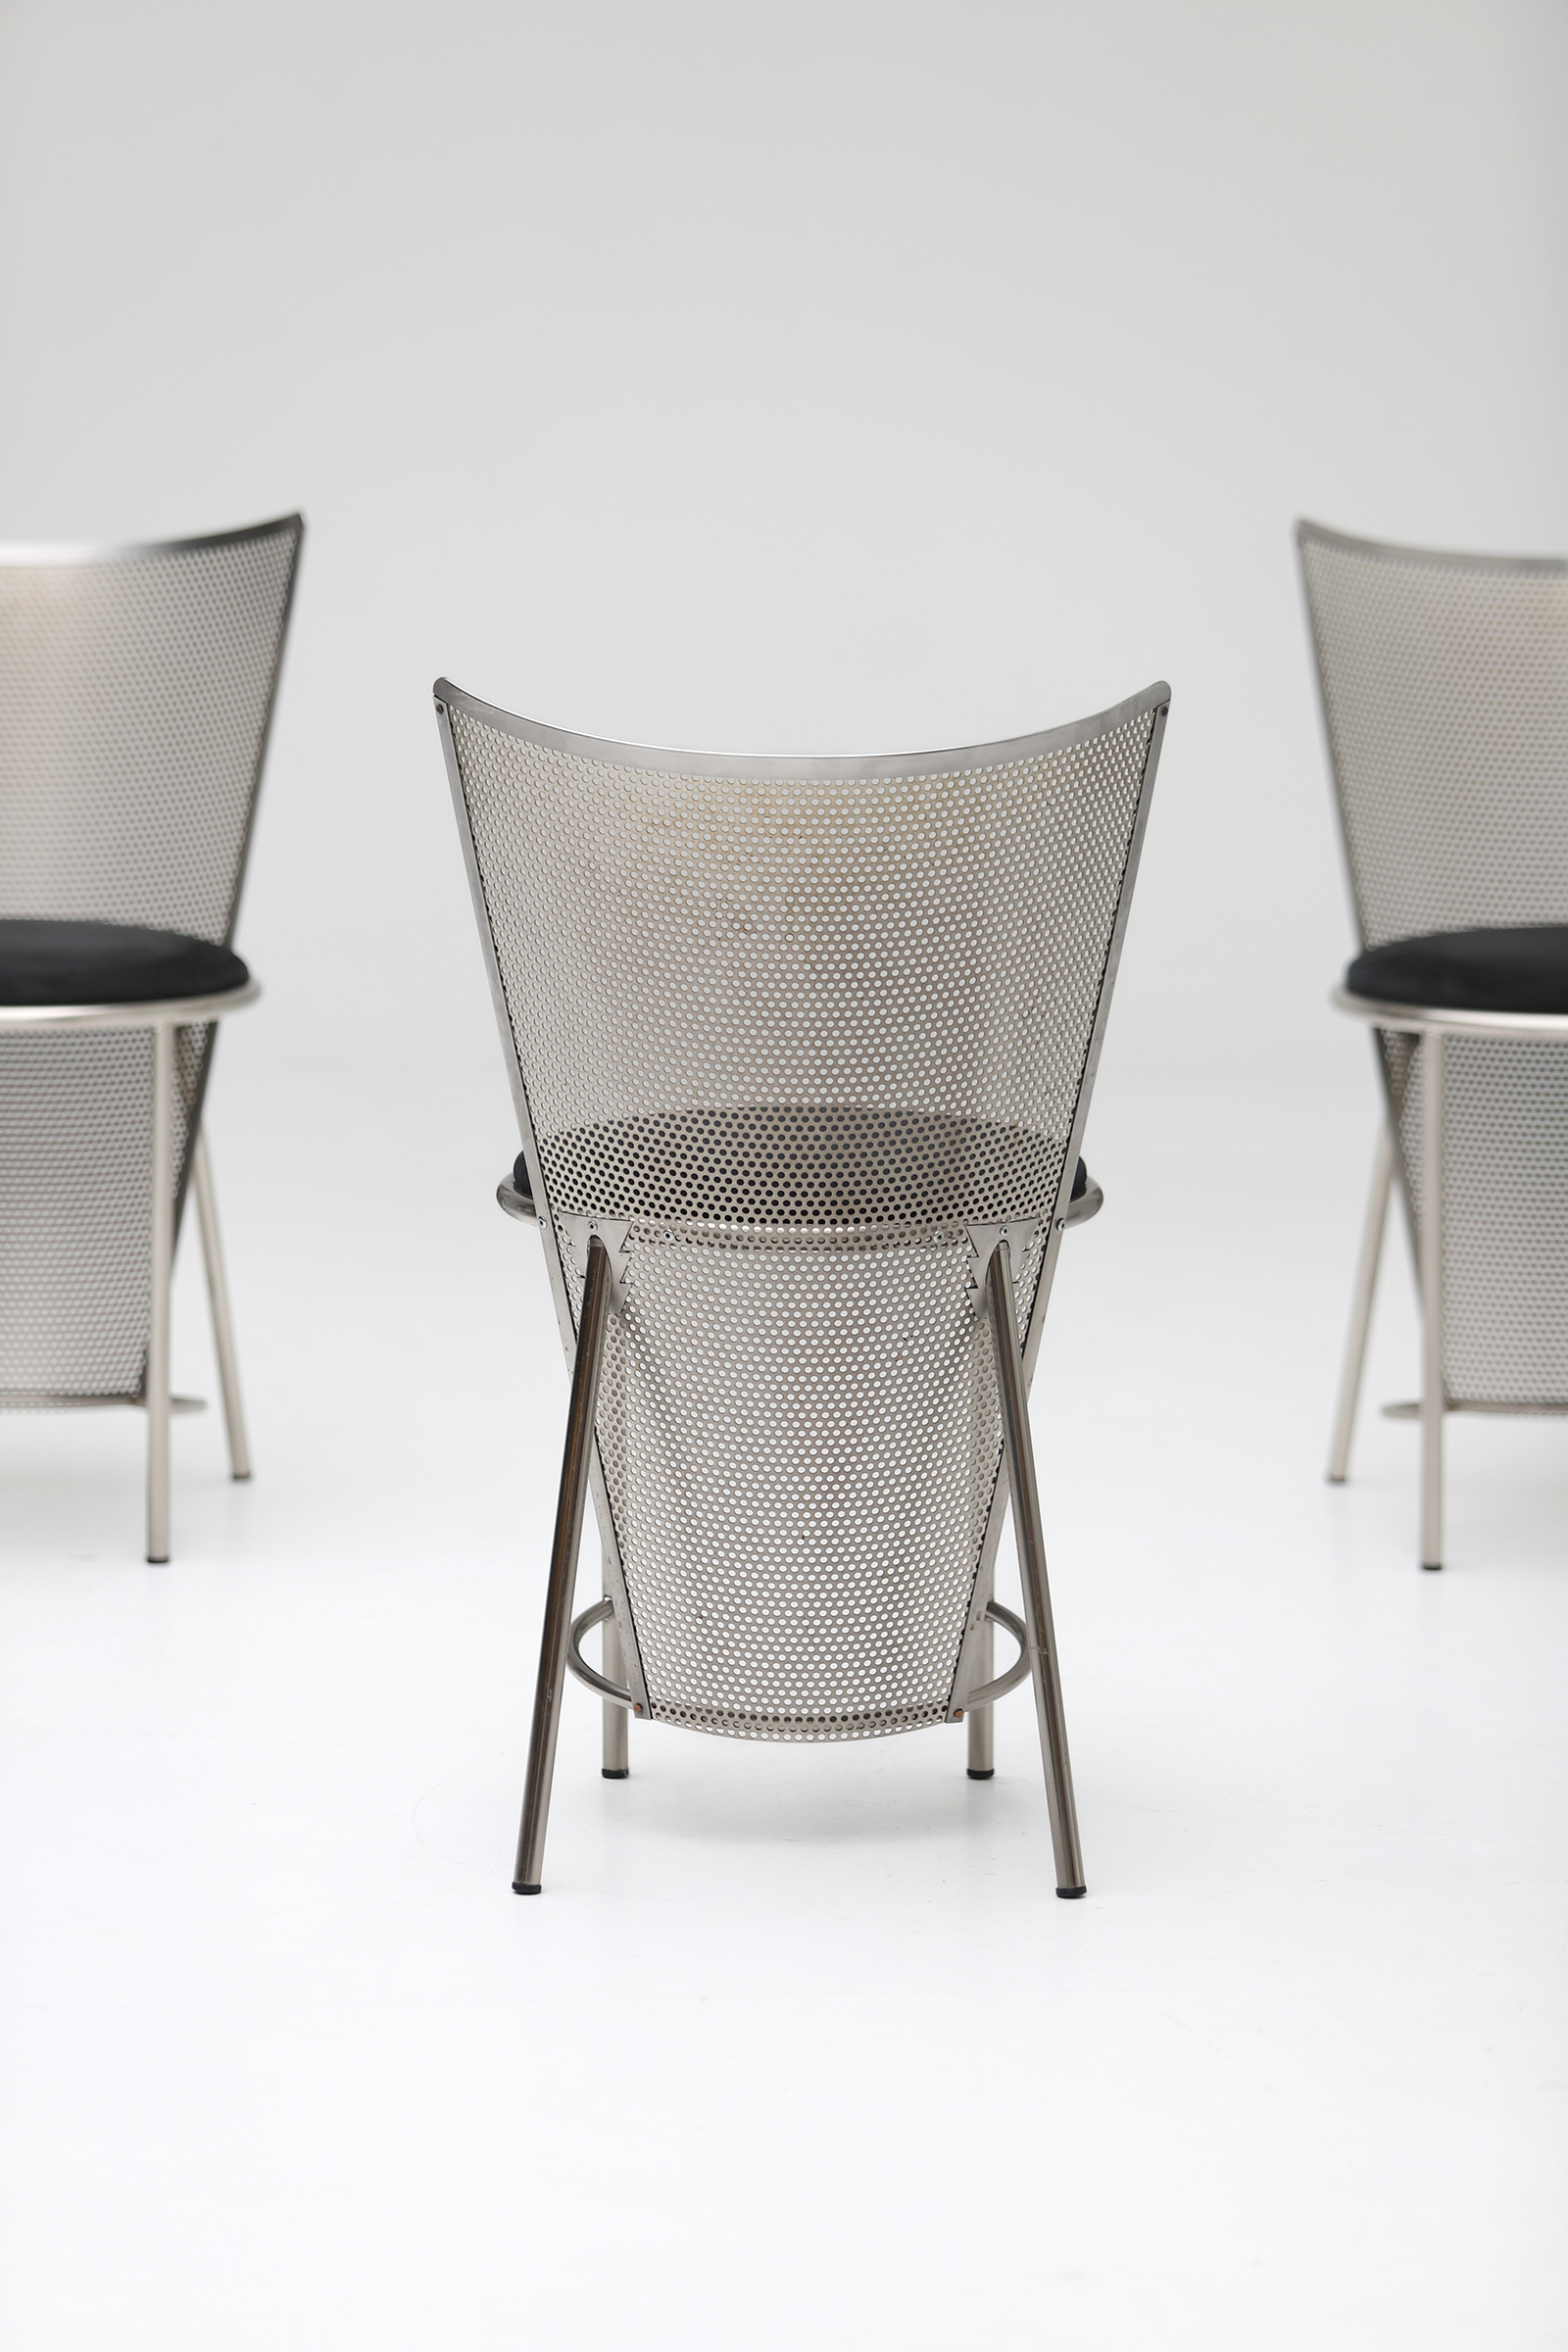 set of 8 Sevilla Chairs by Frans Van Praet for Belgo Chrom 1992image 6